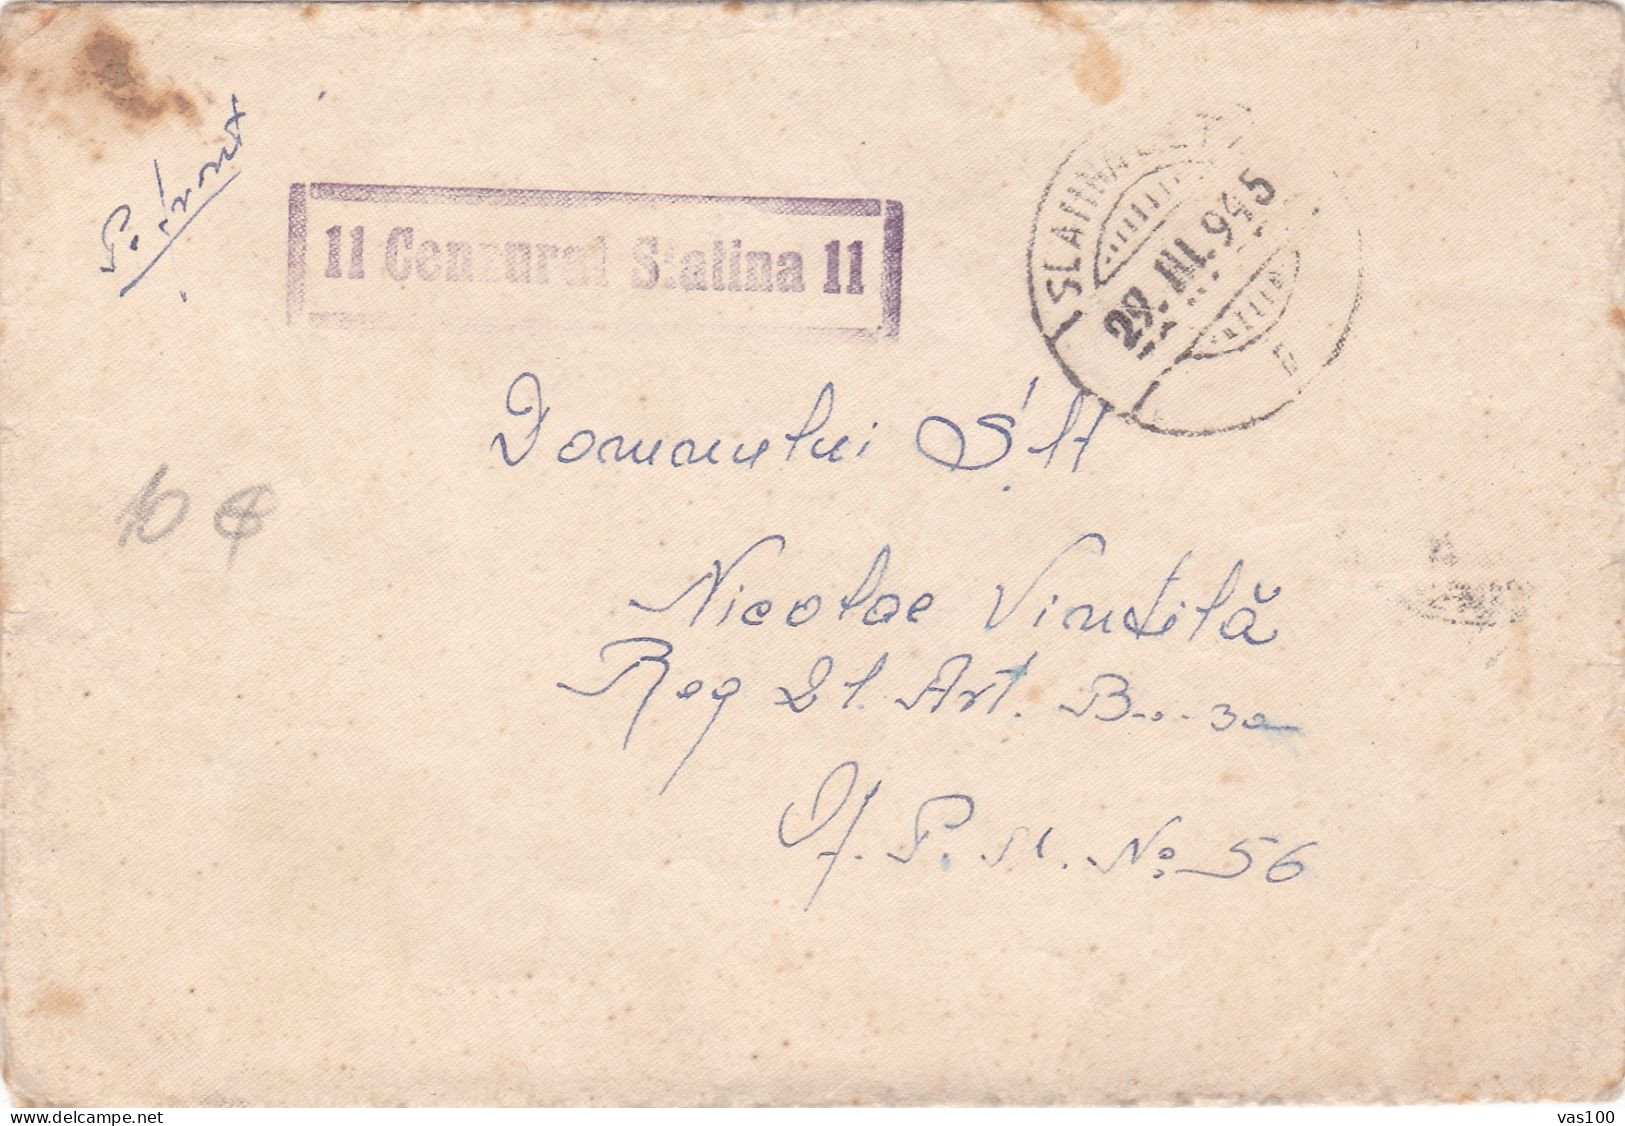 COVER WW2 CENSORED,CENSOR,SLATINA # 11, ROMANIA - Cartas De La Segunda Guerra Mundial